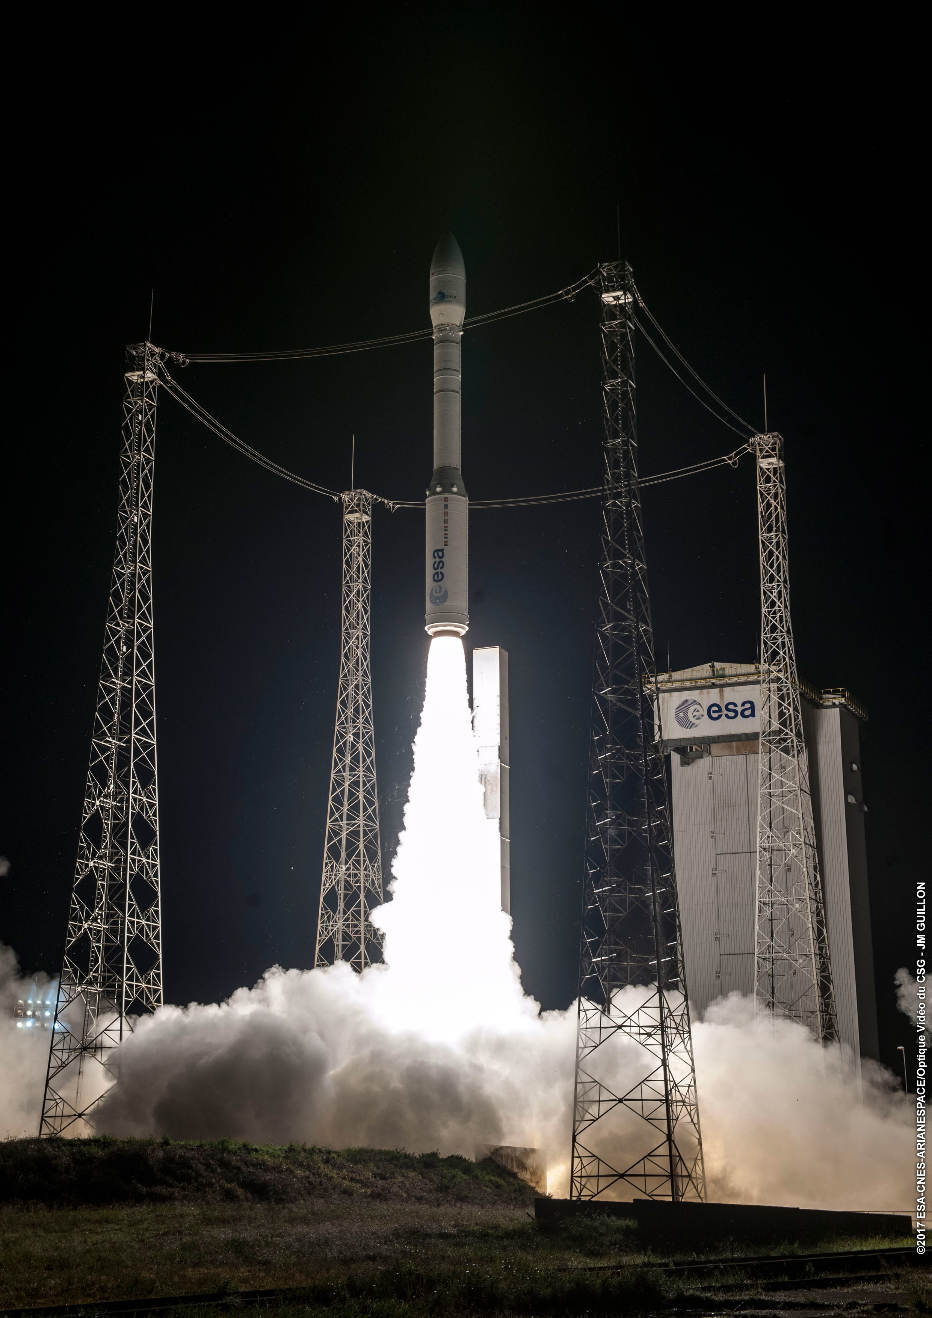 Vega orbits Mohammed VI-A satellite